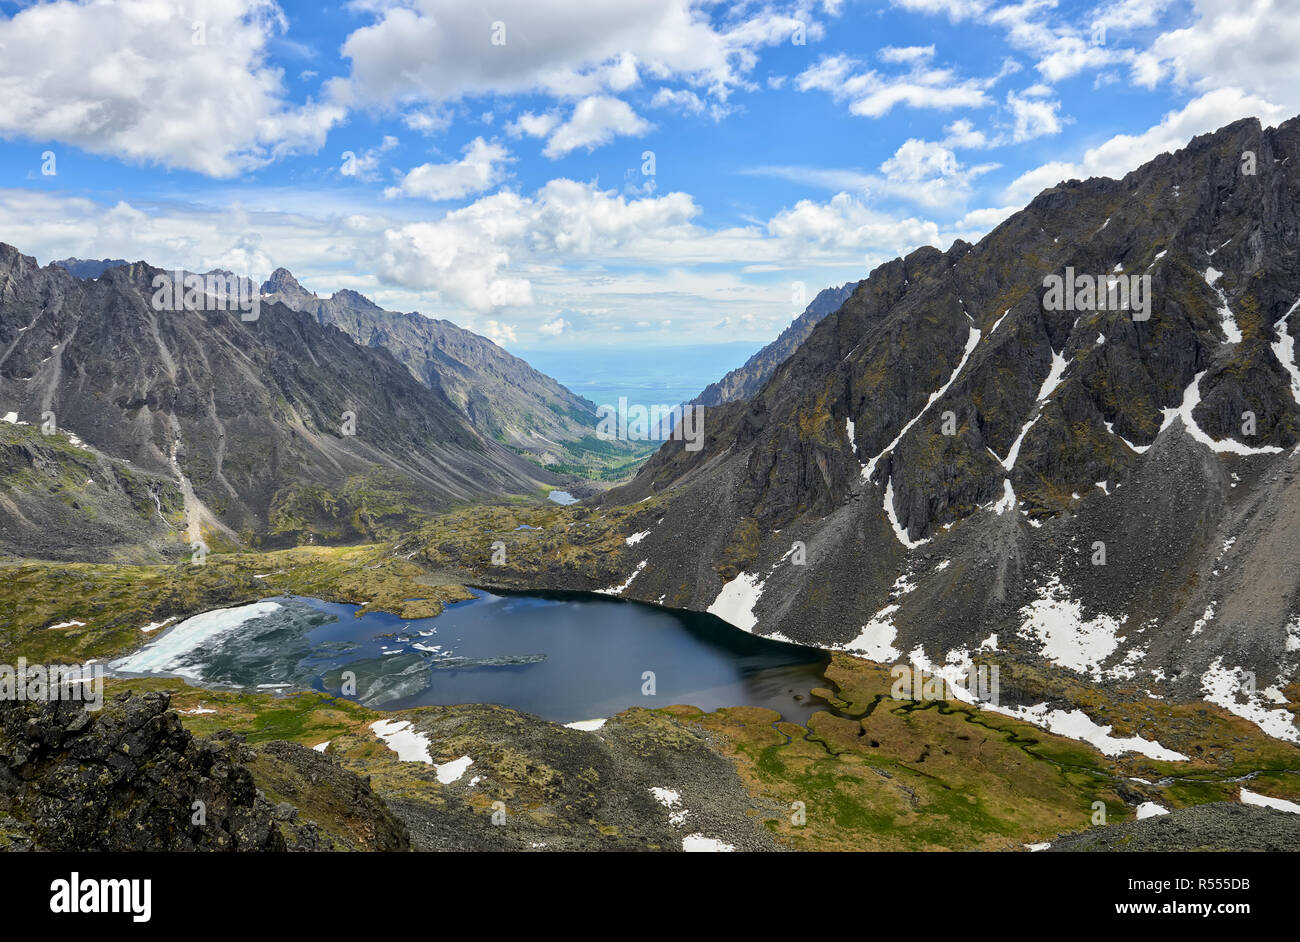 Bergsee mit schwimmenden Eis im engen Tal von Bergen eingeklemmt. Blick von der Höhe des Peaks. Ostsajan. Zentralasien Stockfoto